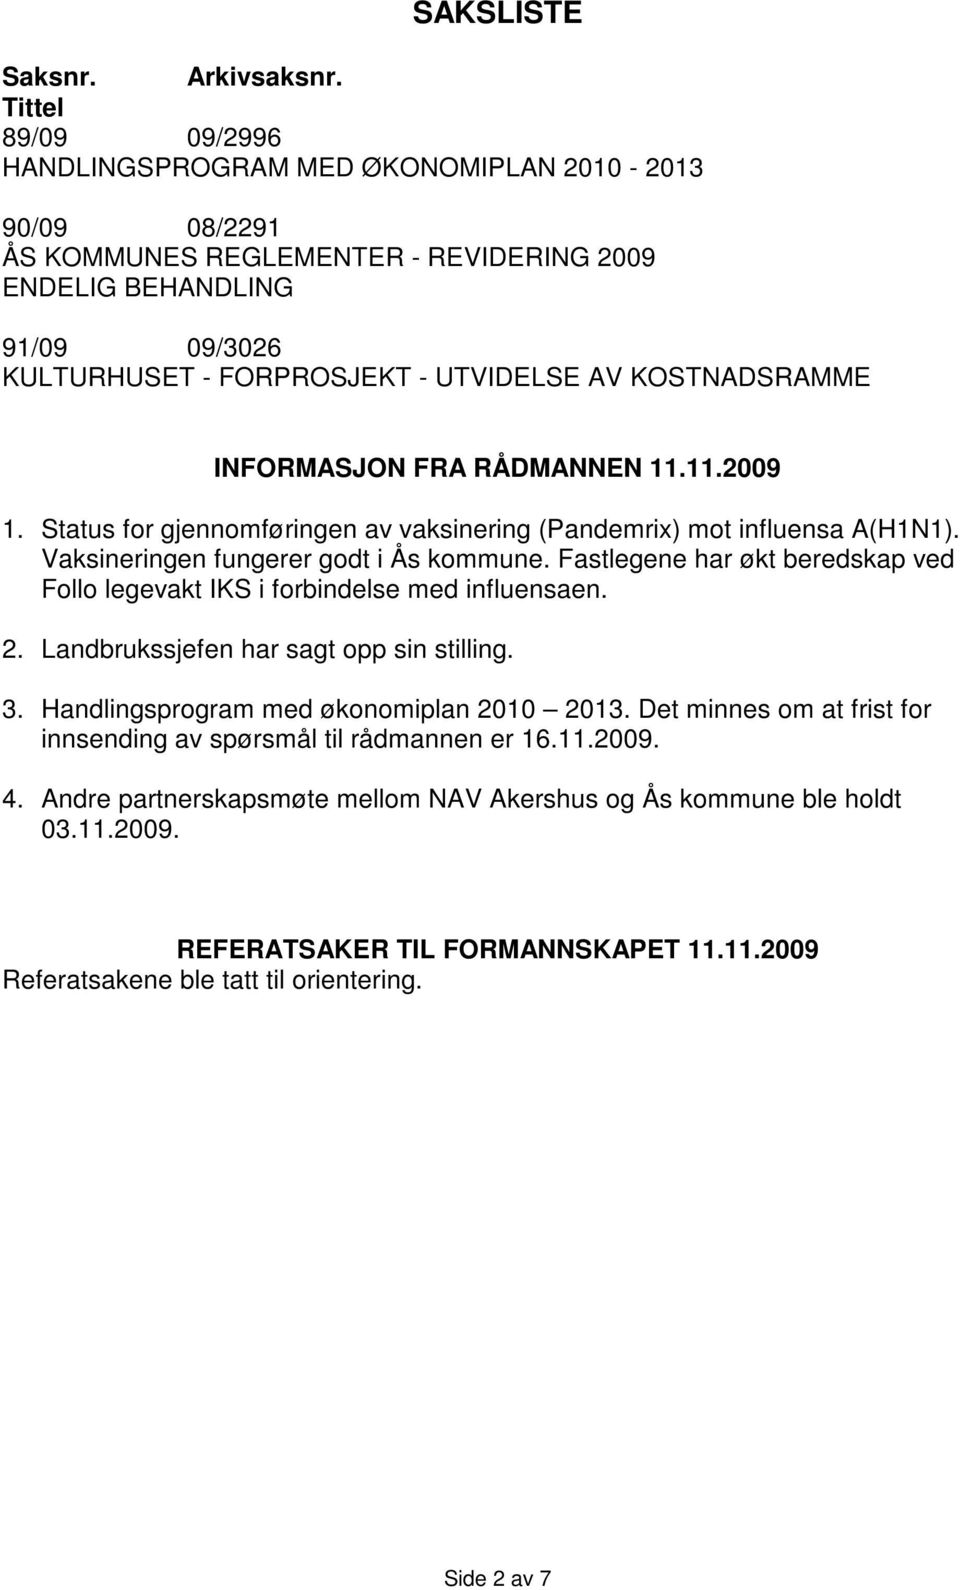 KOSTNADSRAMME INFORMASJON FRA RÅDMANNEN 11.11.2009 1. Status for gjennomføringen av vaksinering (Pandemrix) mot influensa A(H1N1). Vaksineringen fungerer godt i Ås kommune.